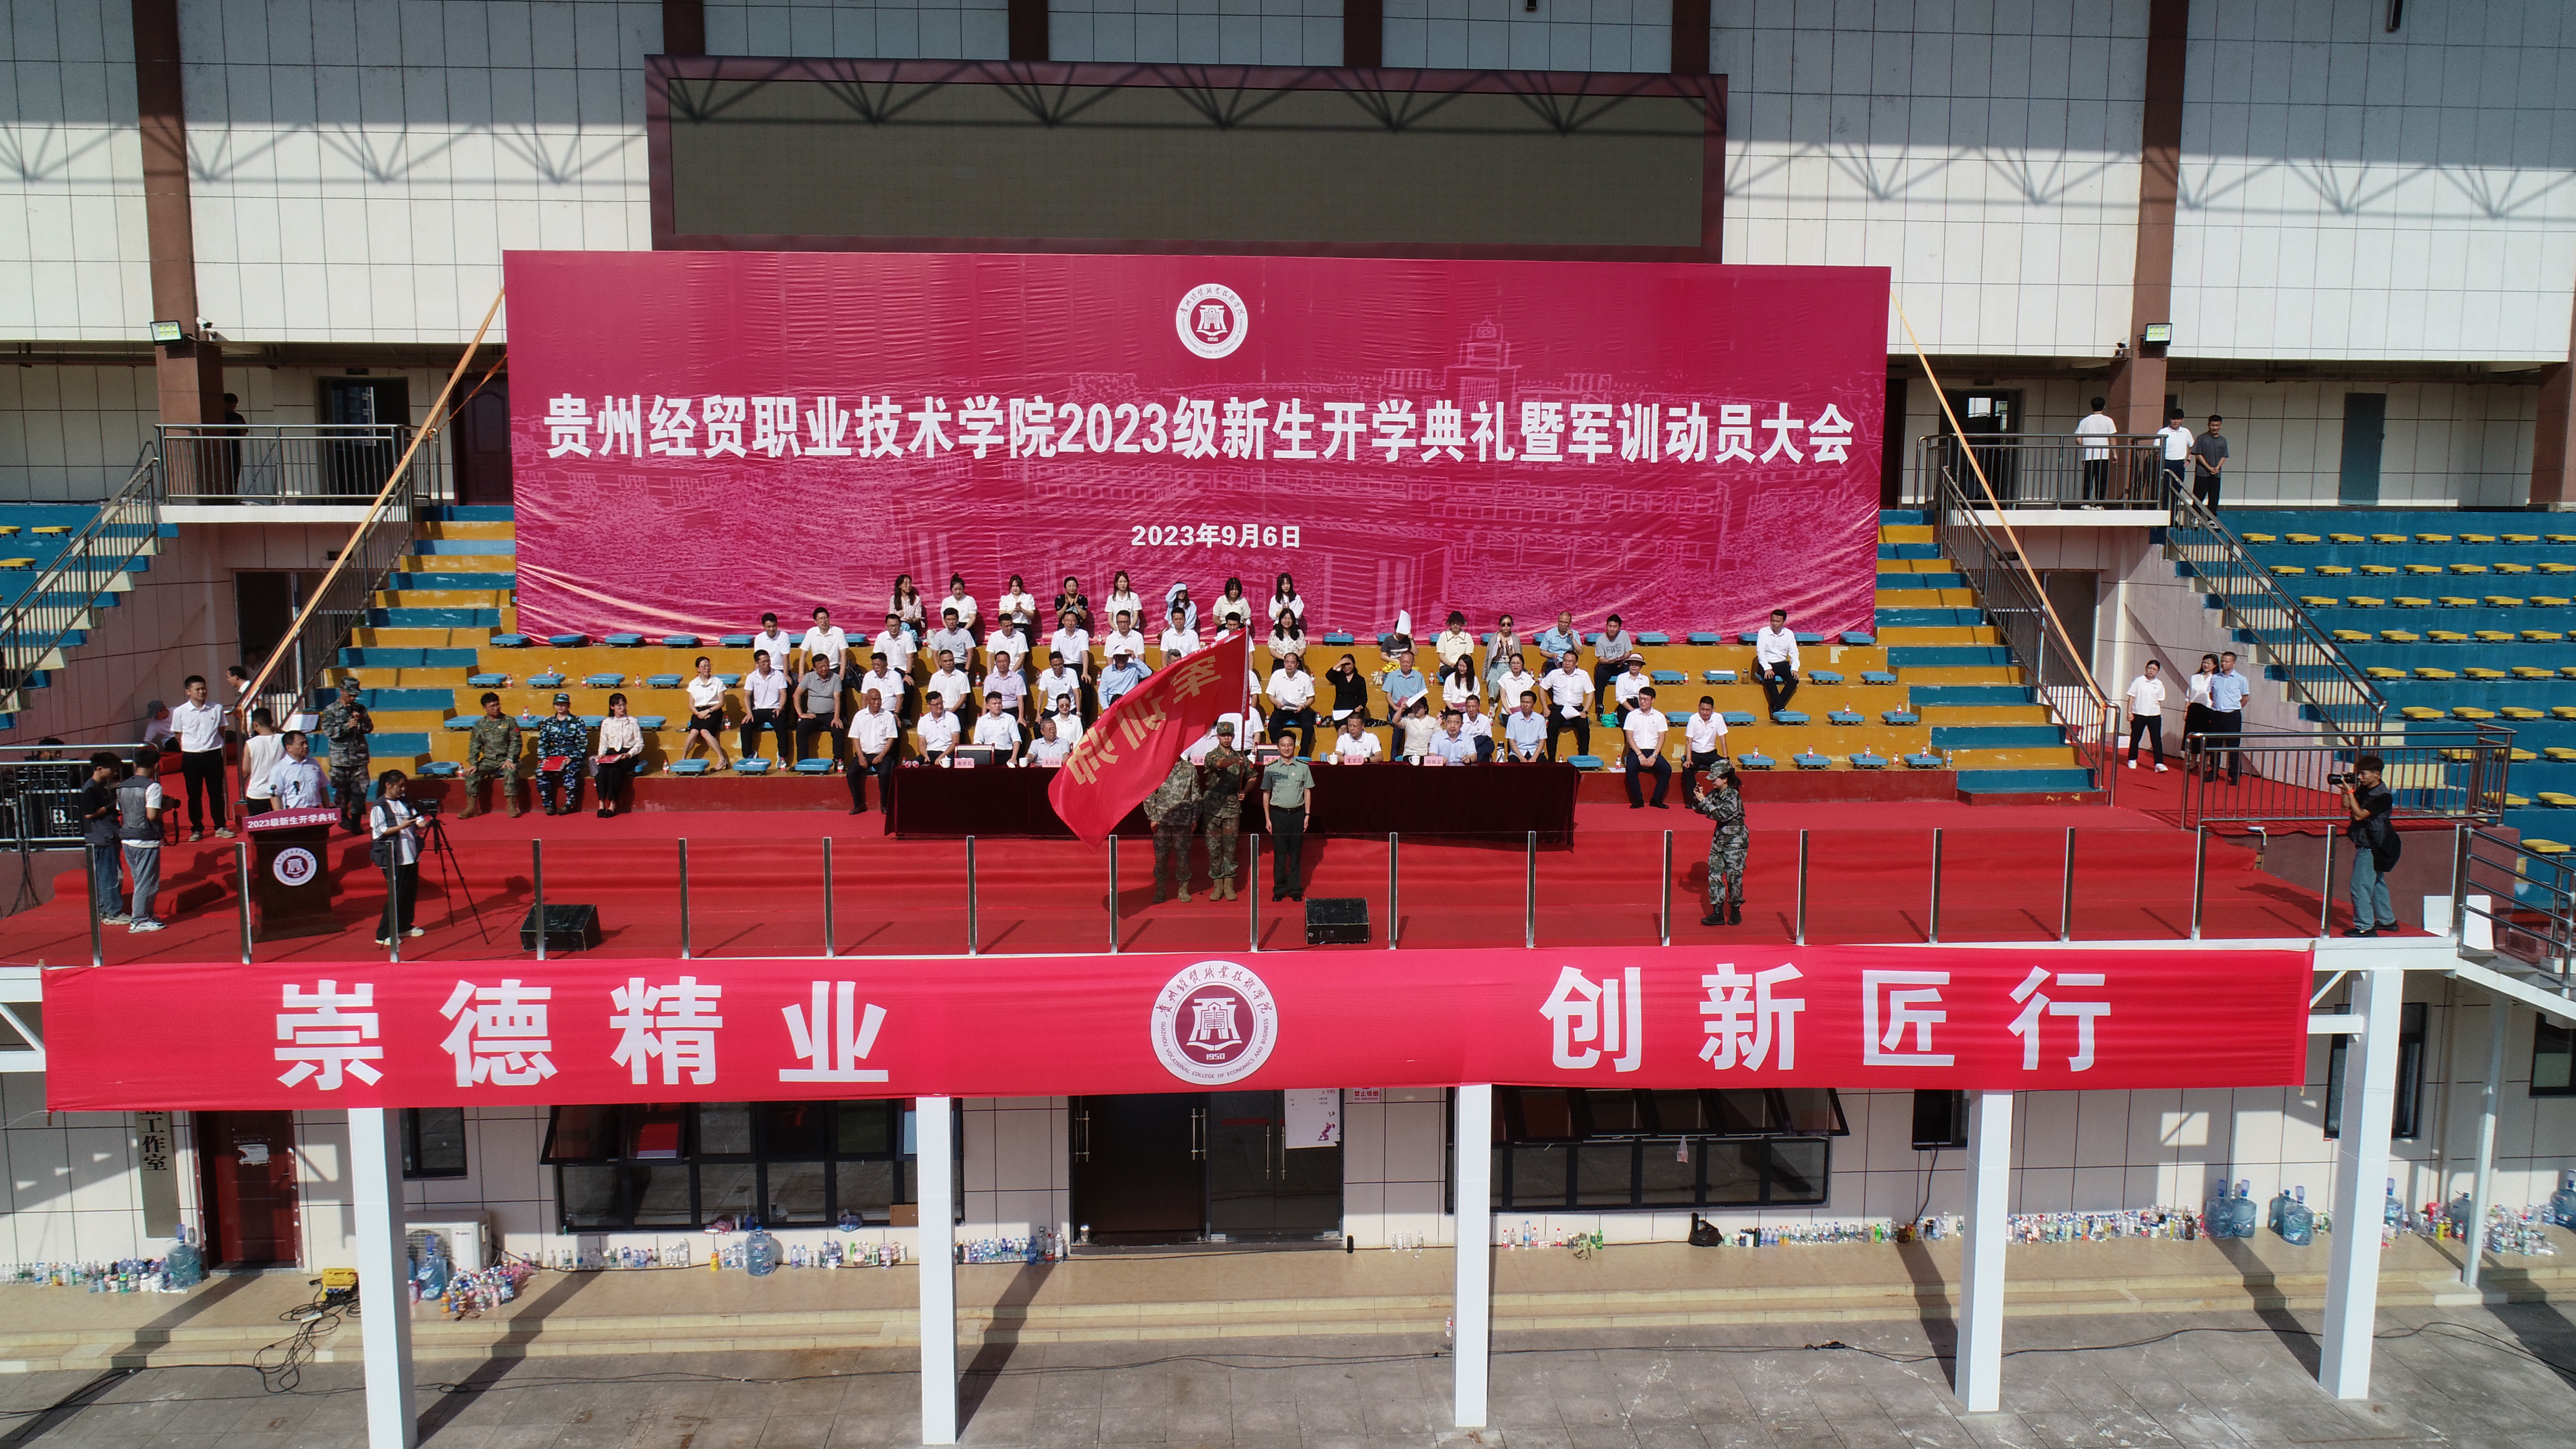 贵州经贸职业技术学院举行2023级新生开学典礼暨军训动员大会